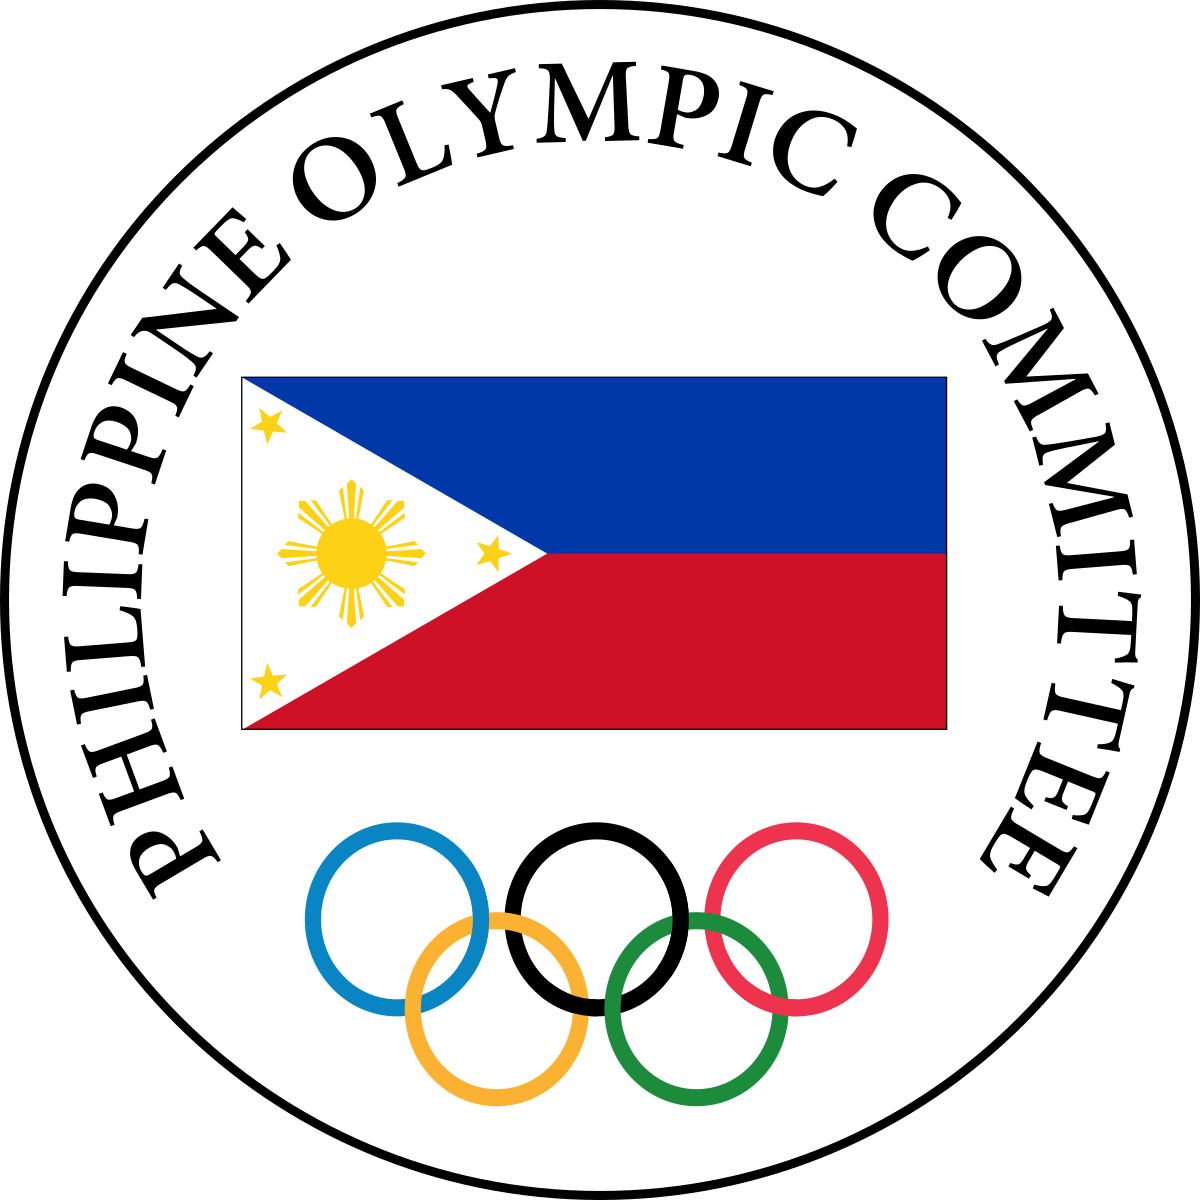 Aranas targeting increased sponsorship for Philippine Olympic Committee in leadership bid